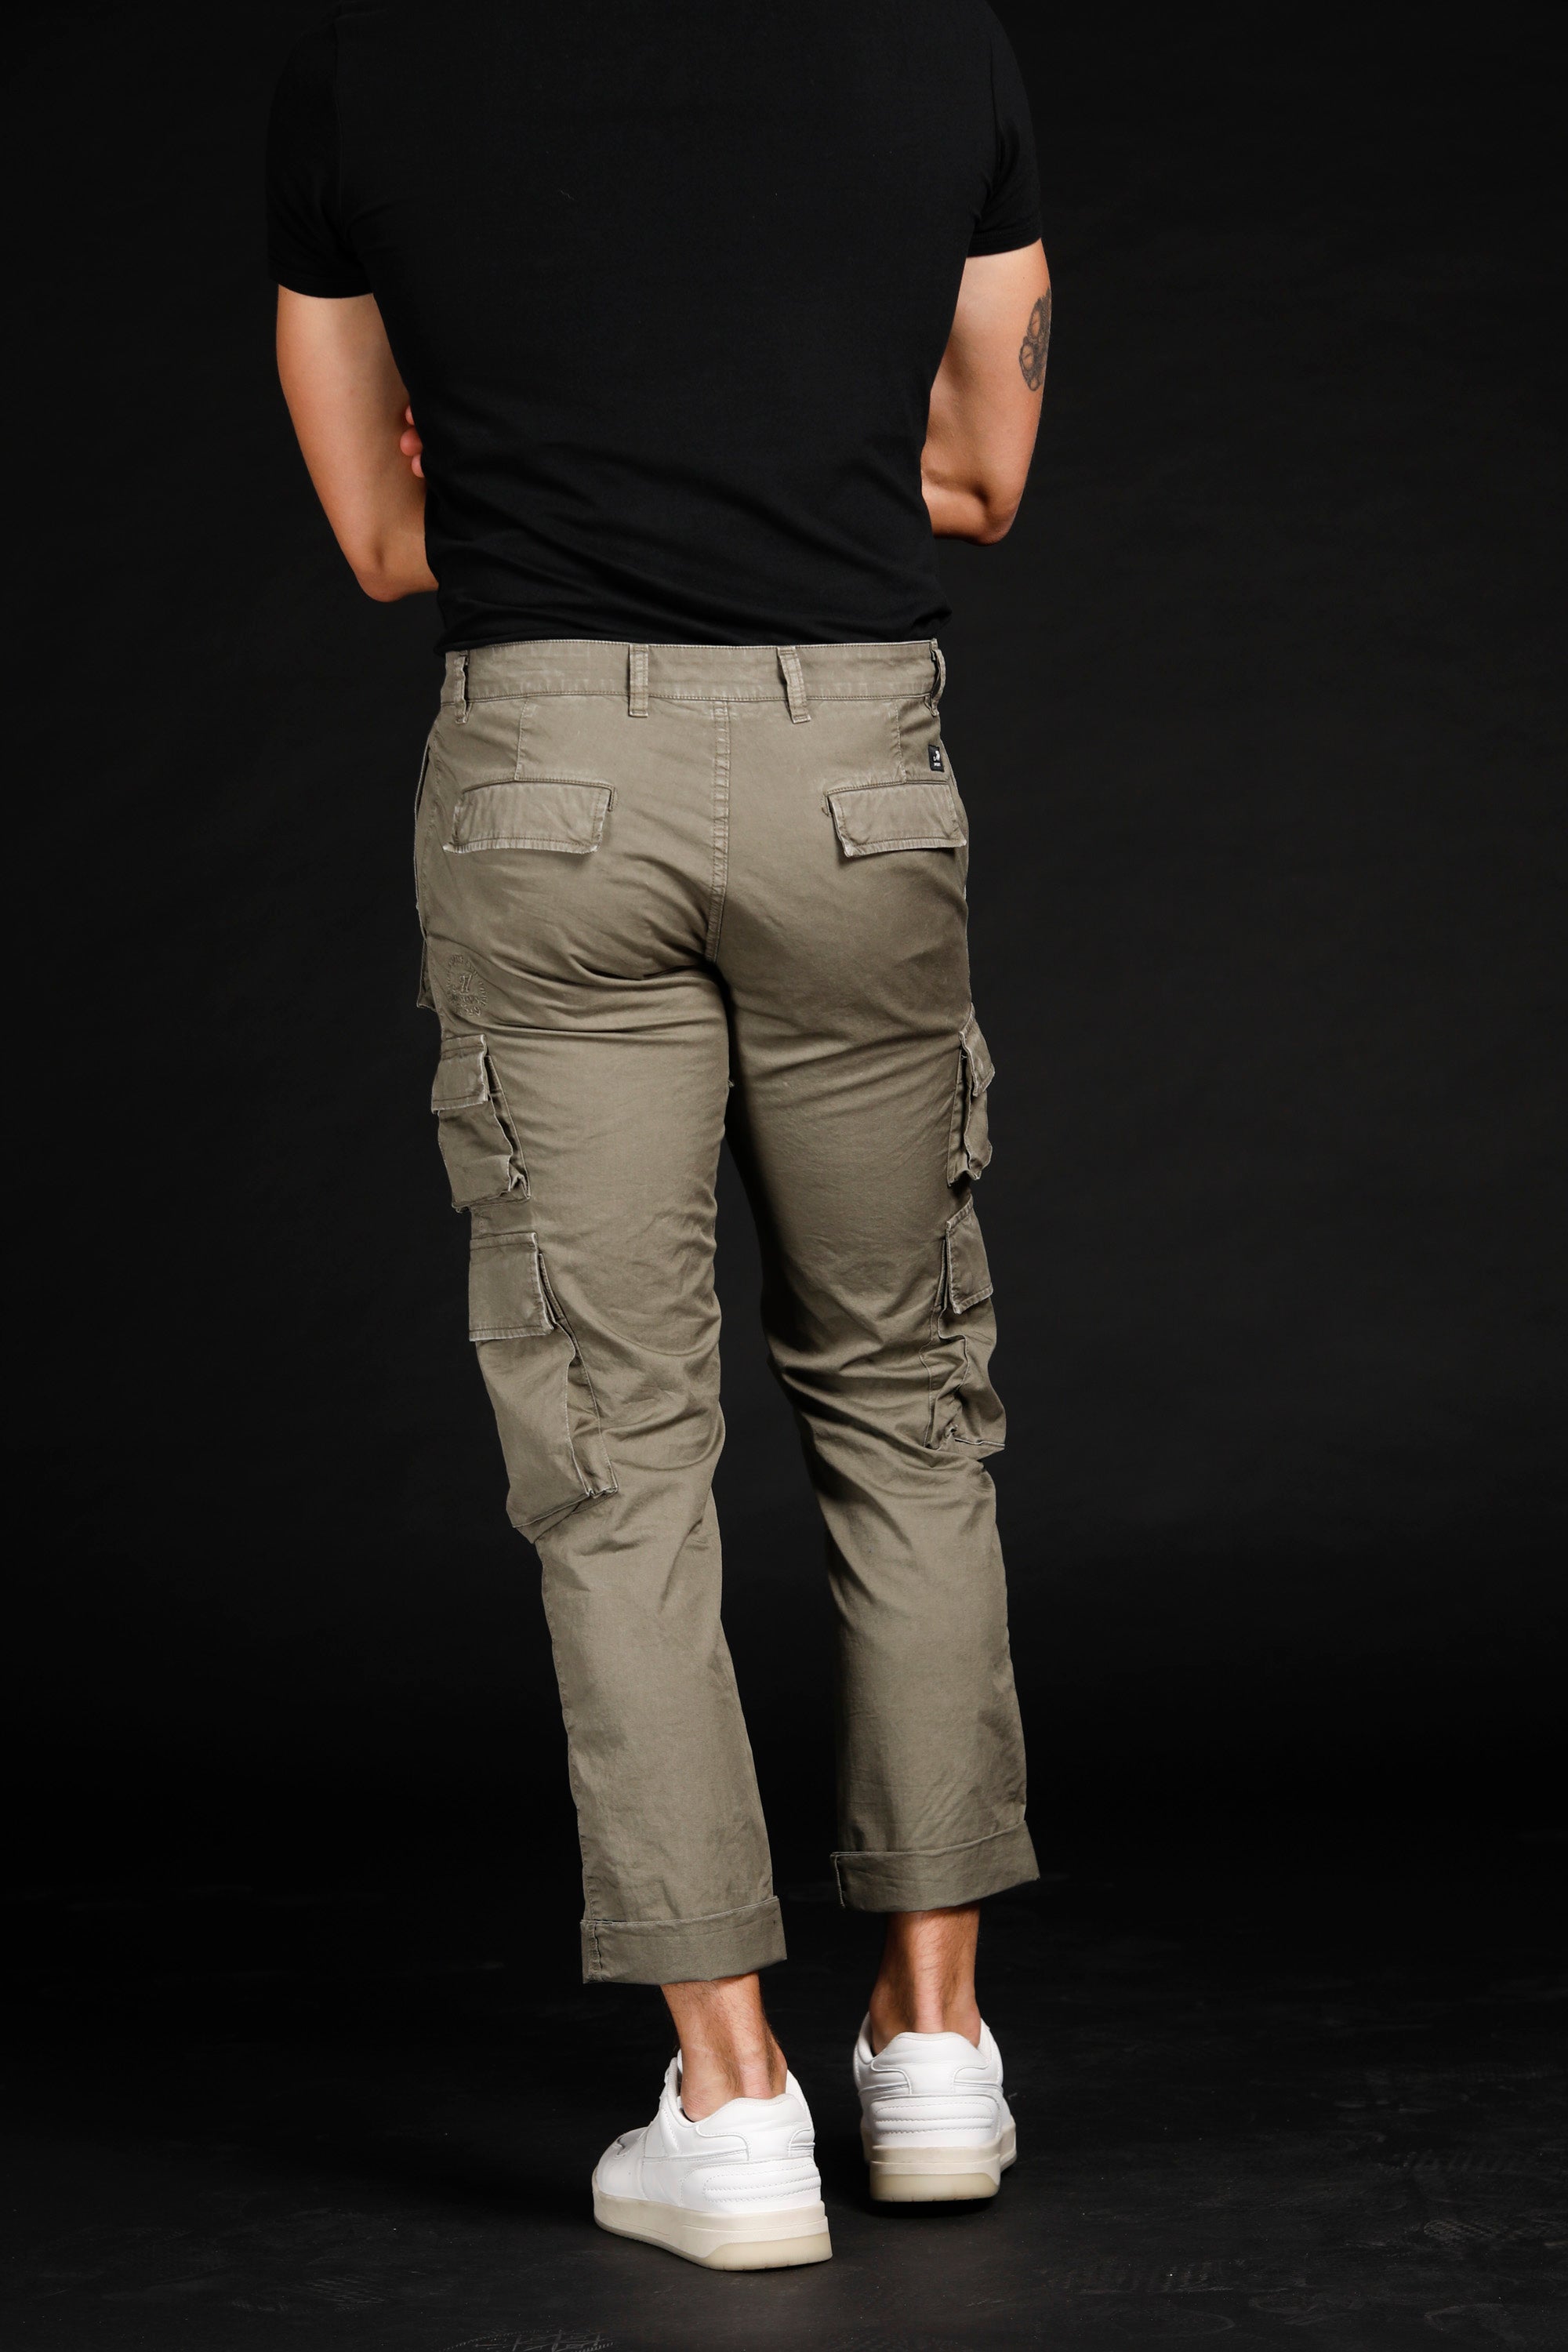 Caracas pantalon cargo homme édition limitée en coton stretch regular ①